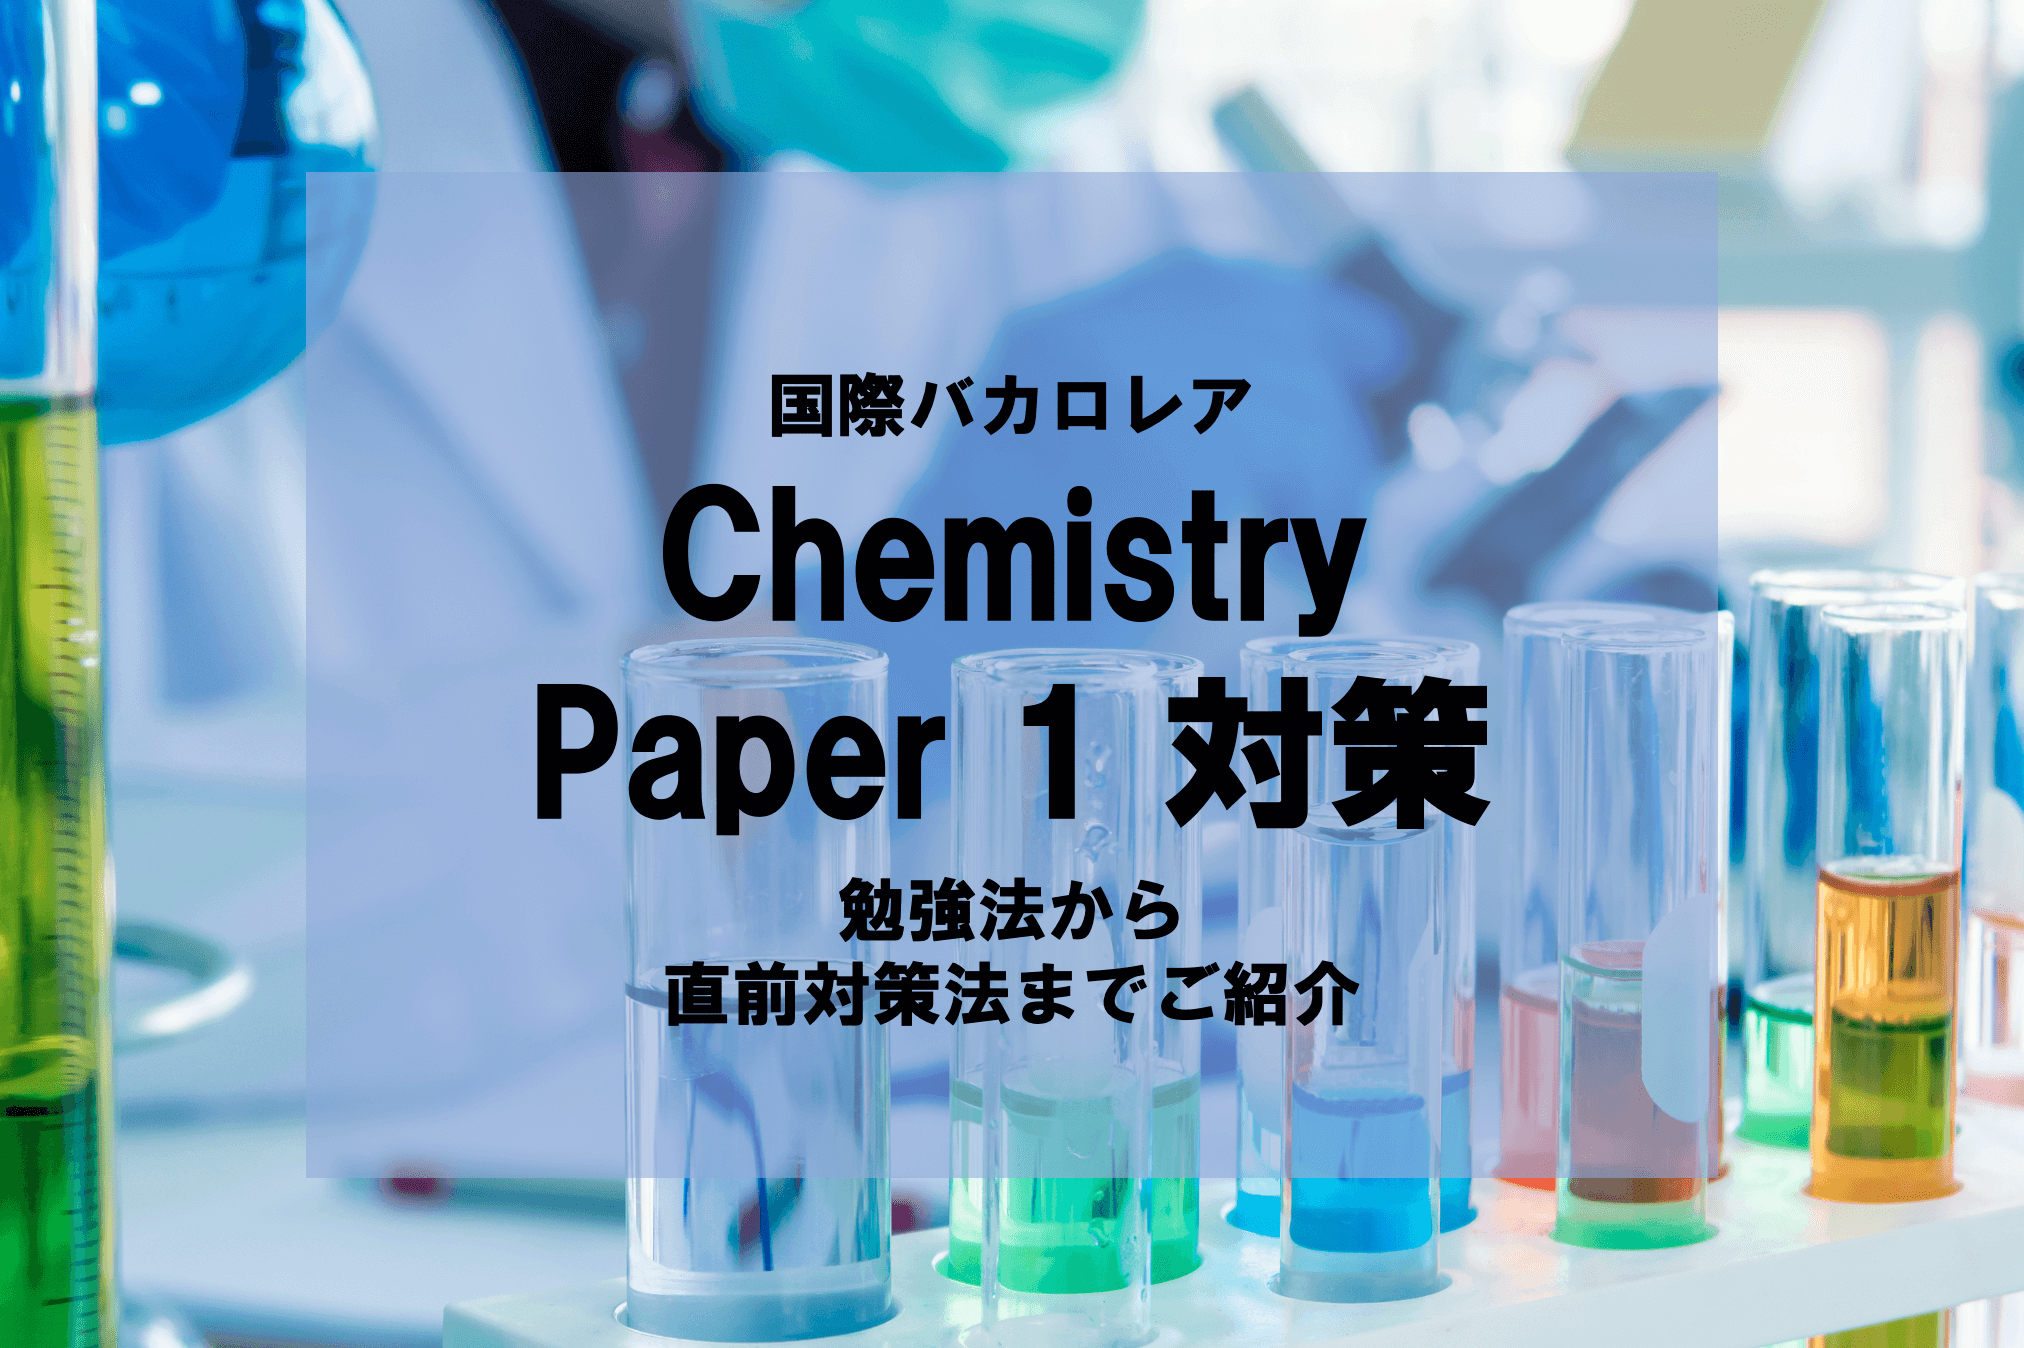 IB Chemistry Paper 1（国際バカロレア化学）の対策方法・勉強方法を徹底解説！